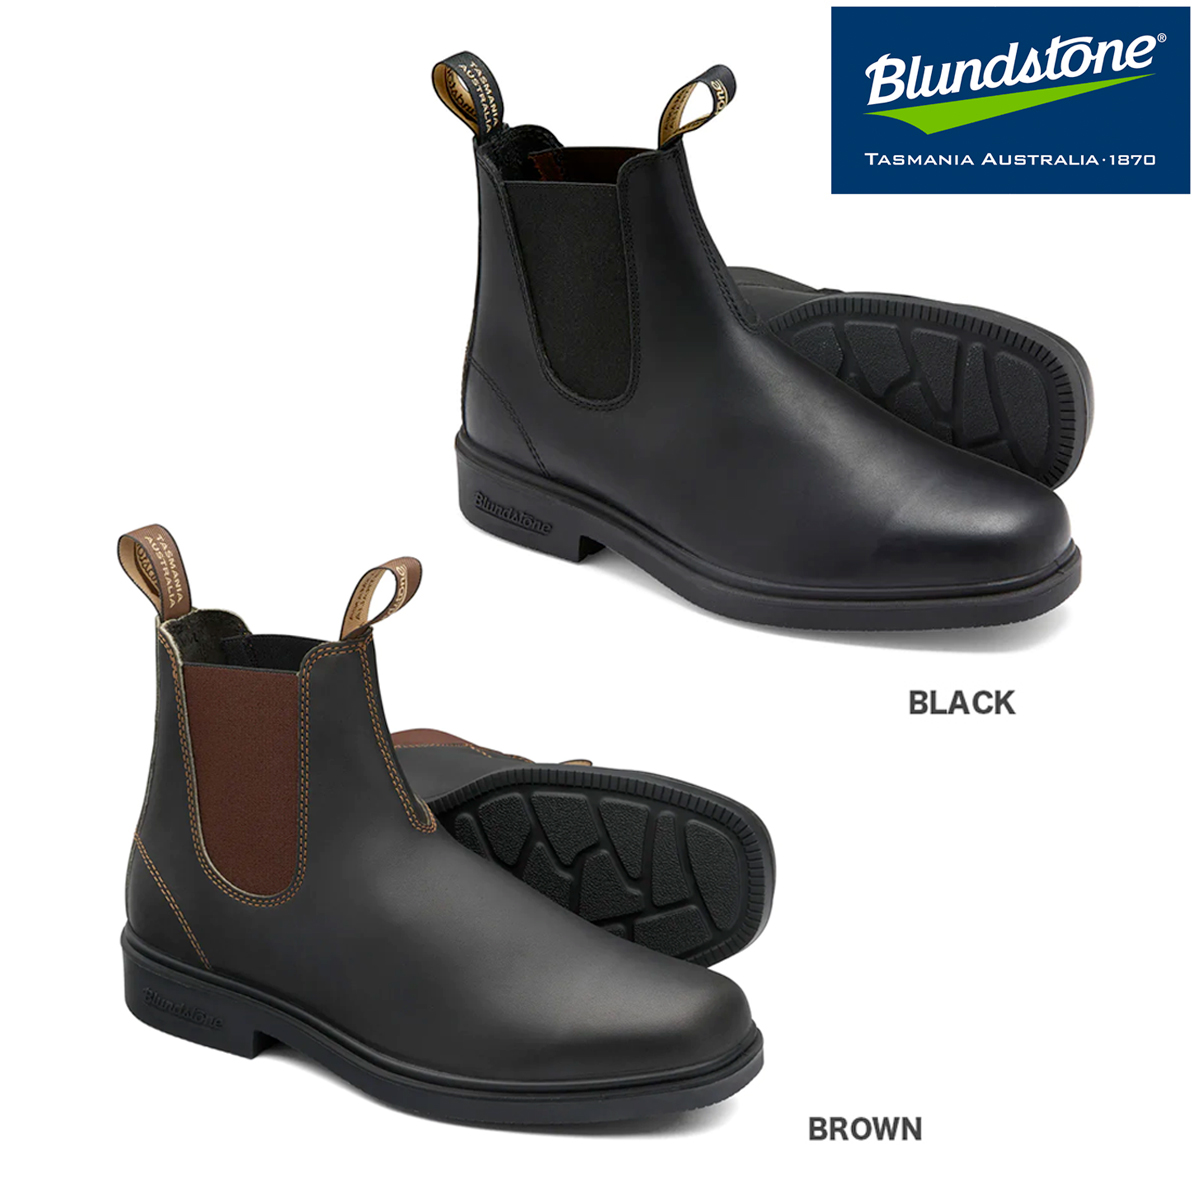 【プライスダウン】 15時迄のご注文で即日発送可 BLUNDSTONE DRESS BOOTS ブランドストーン ドレス ブーツ BLACK BS063089 / BROWN BS062050画像